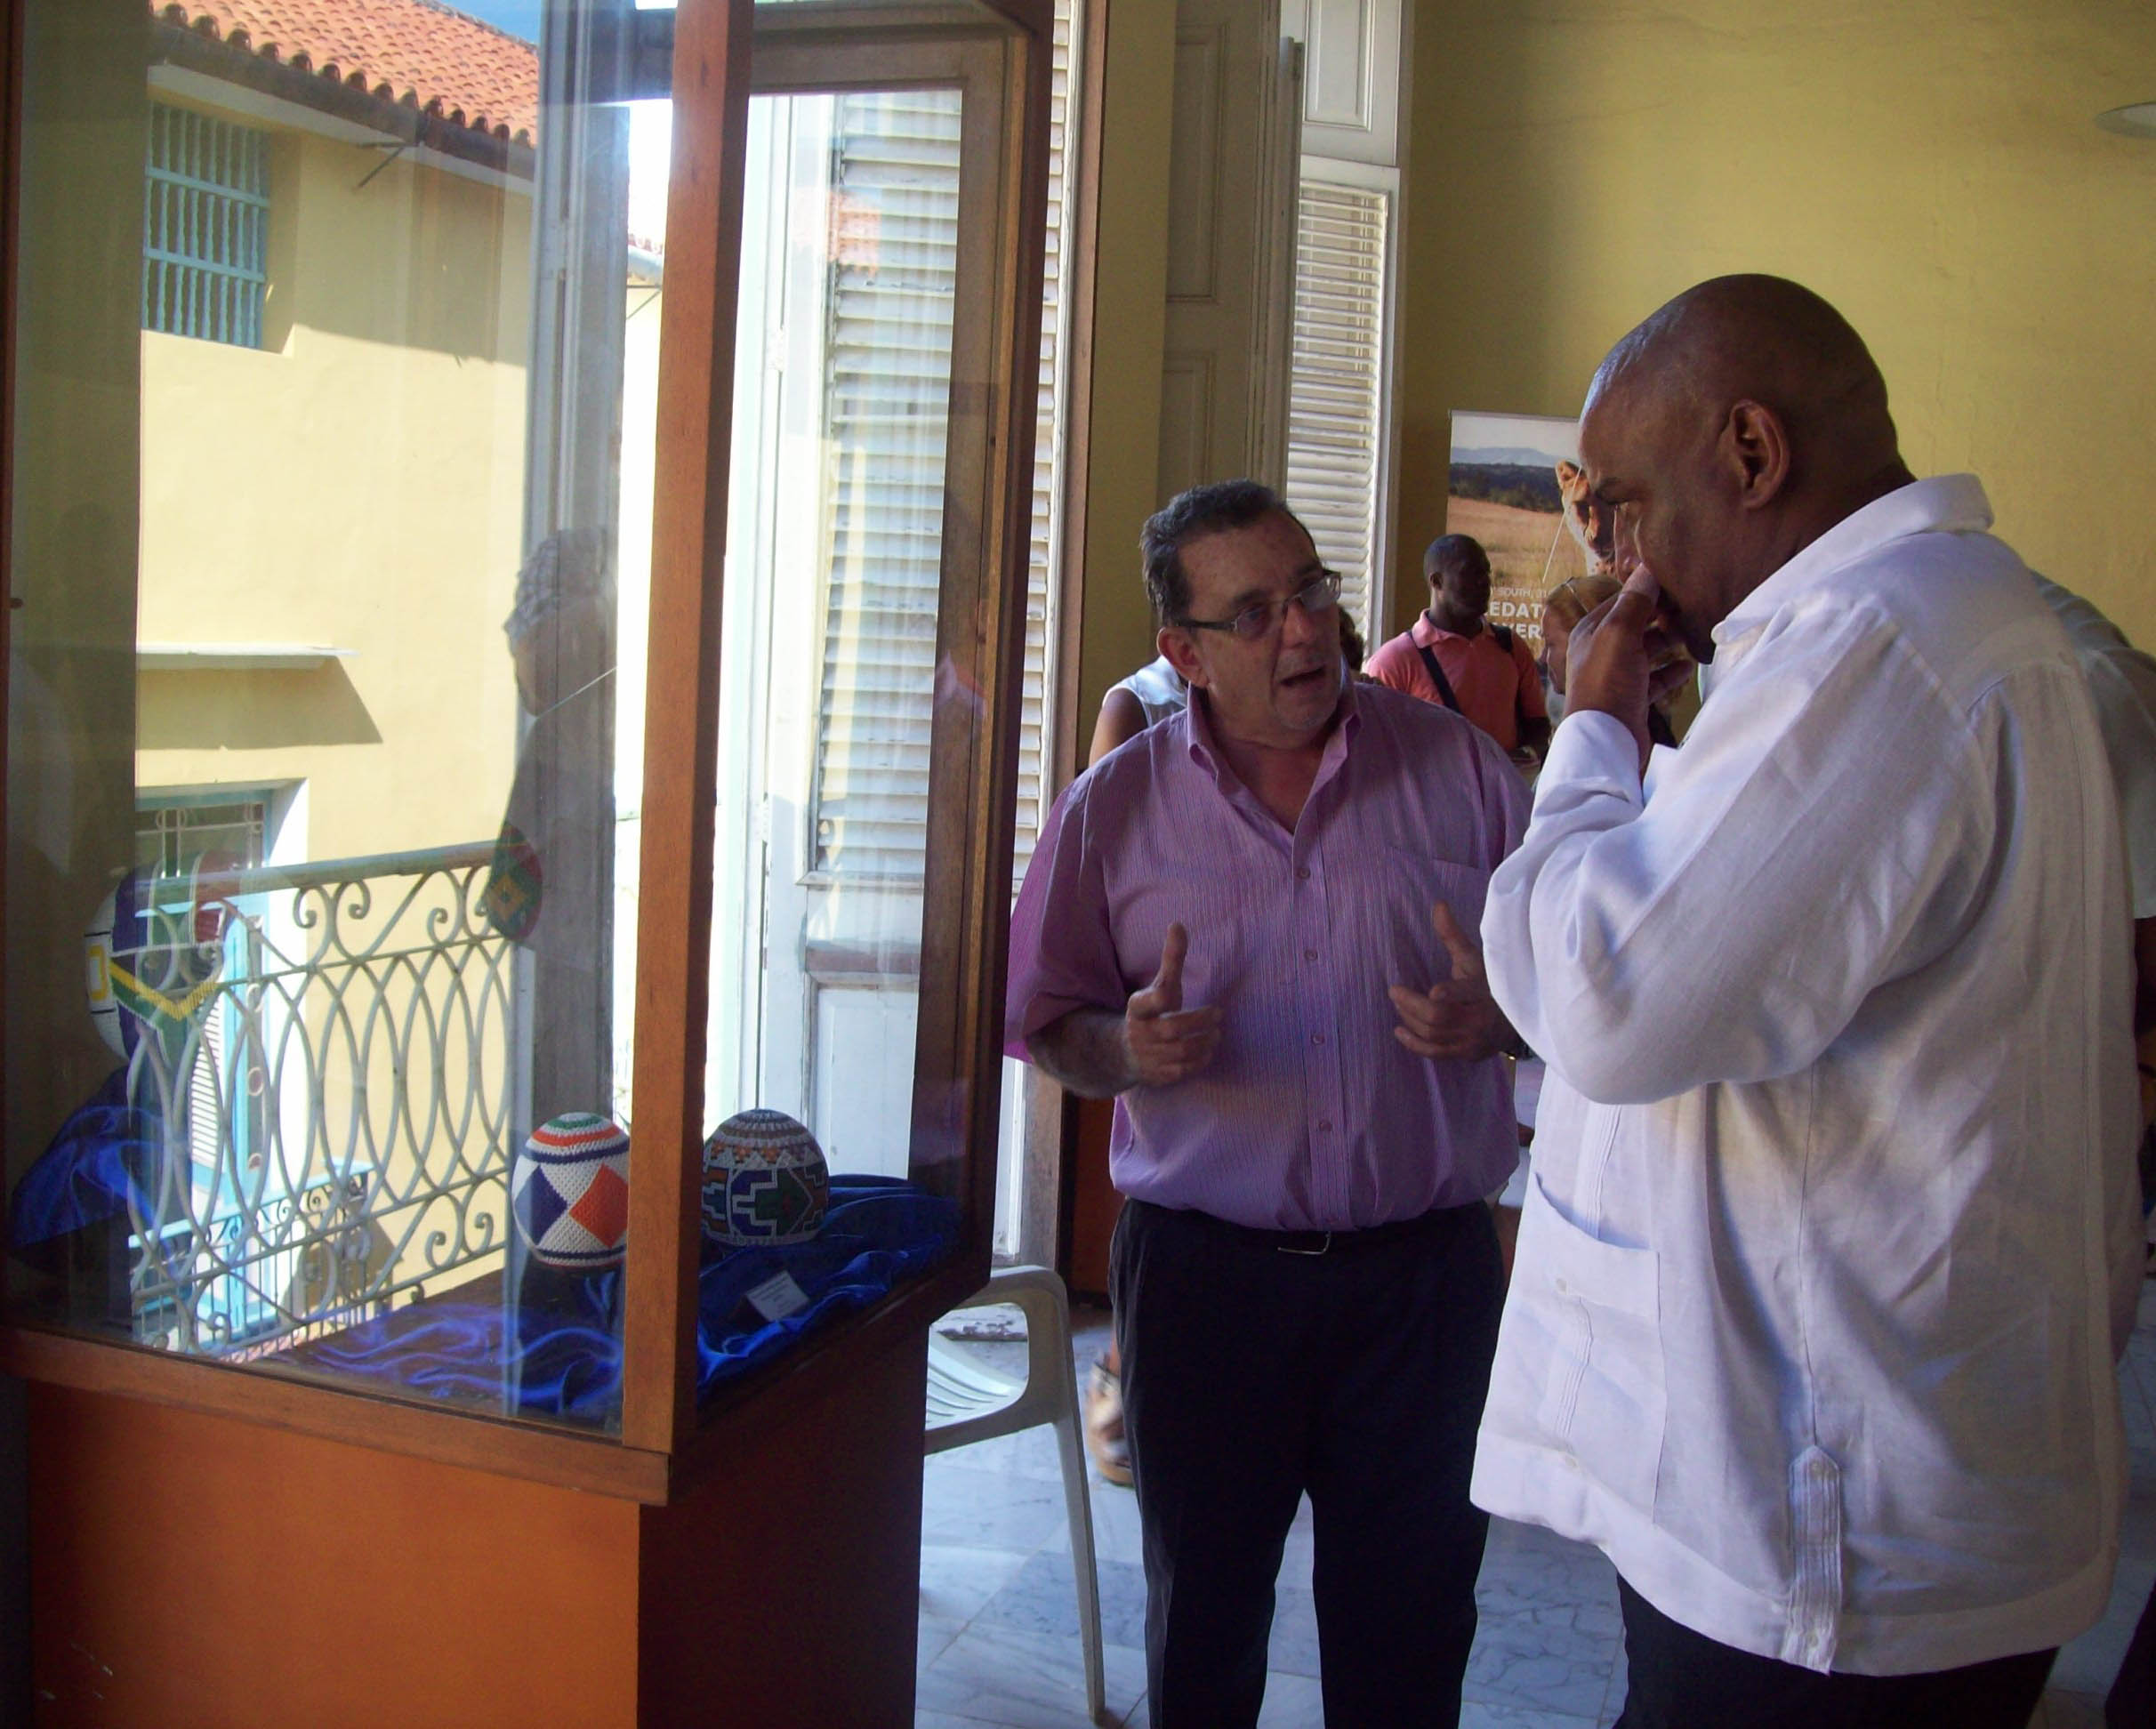 Alberto Granado visita junto al embajador de Sudafrica en Cuba Sr. Naphtal Manana la muestra